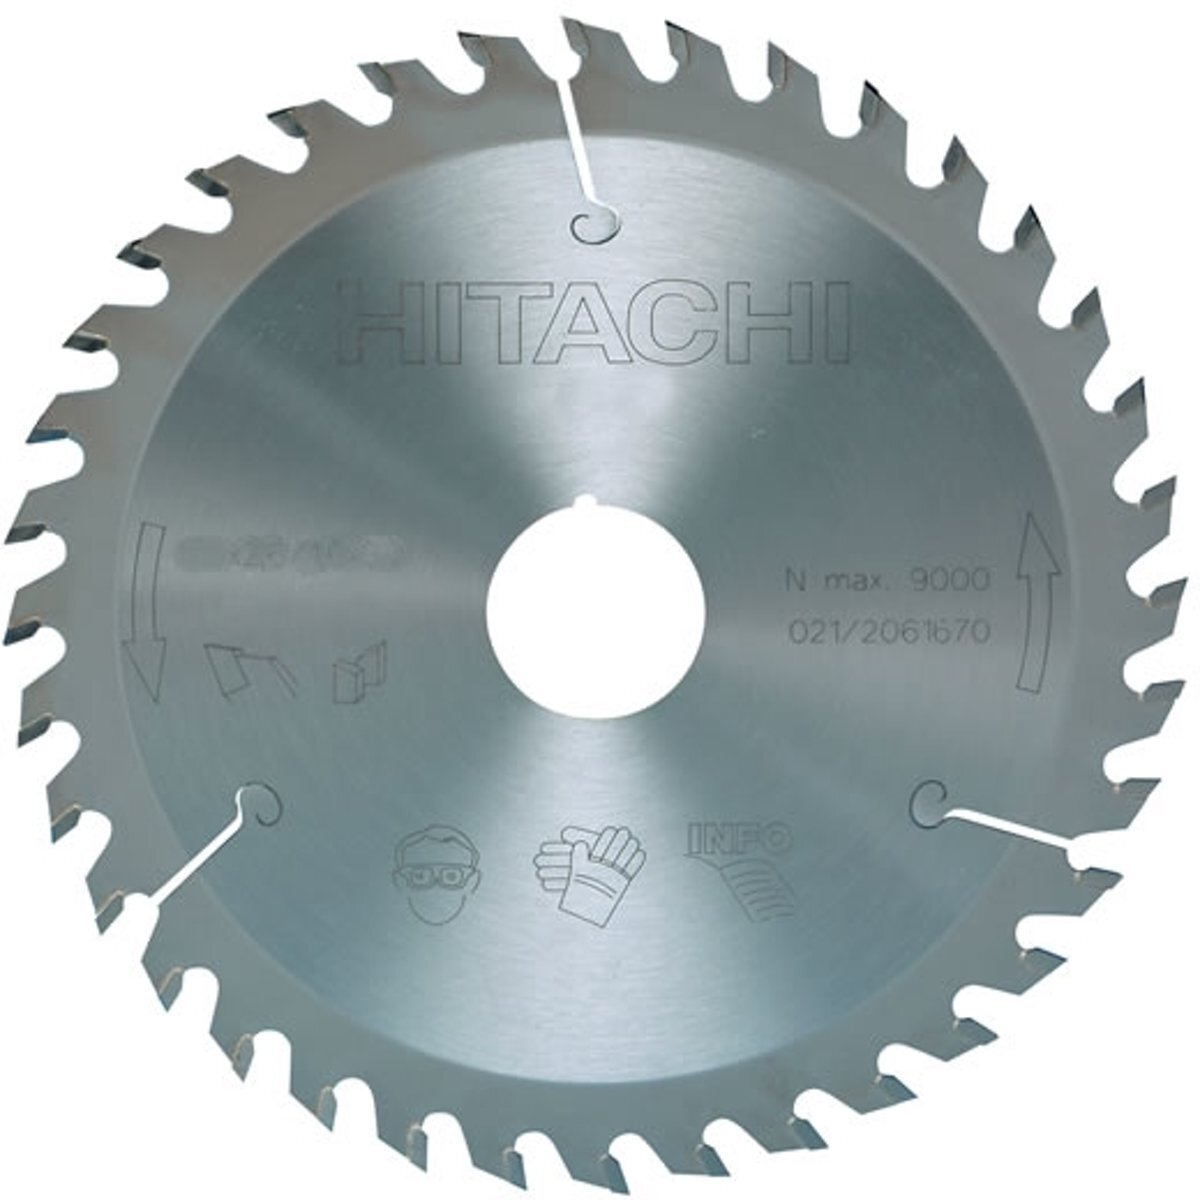 Hitachi Cirkelzaagmachine voor aluminium 255x30mm 80t 75247voorwaarden